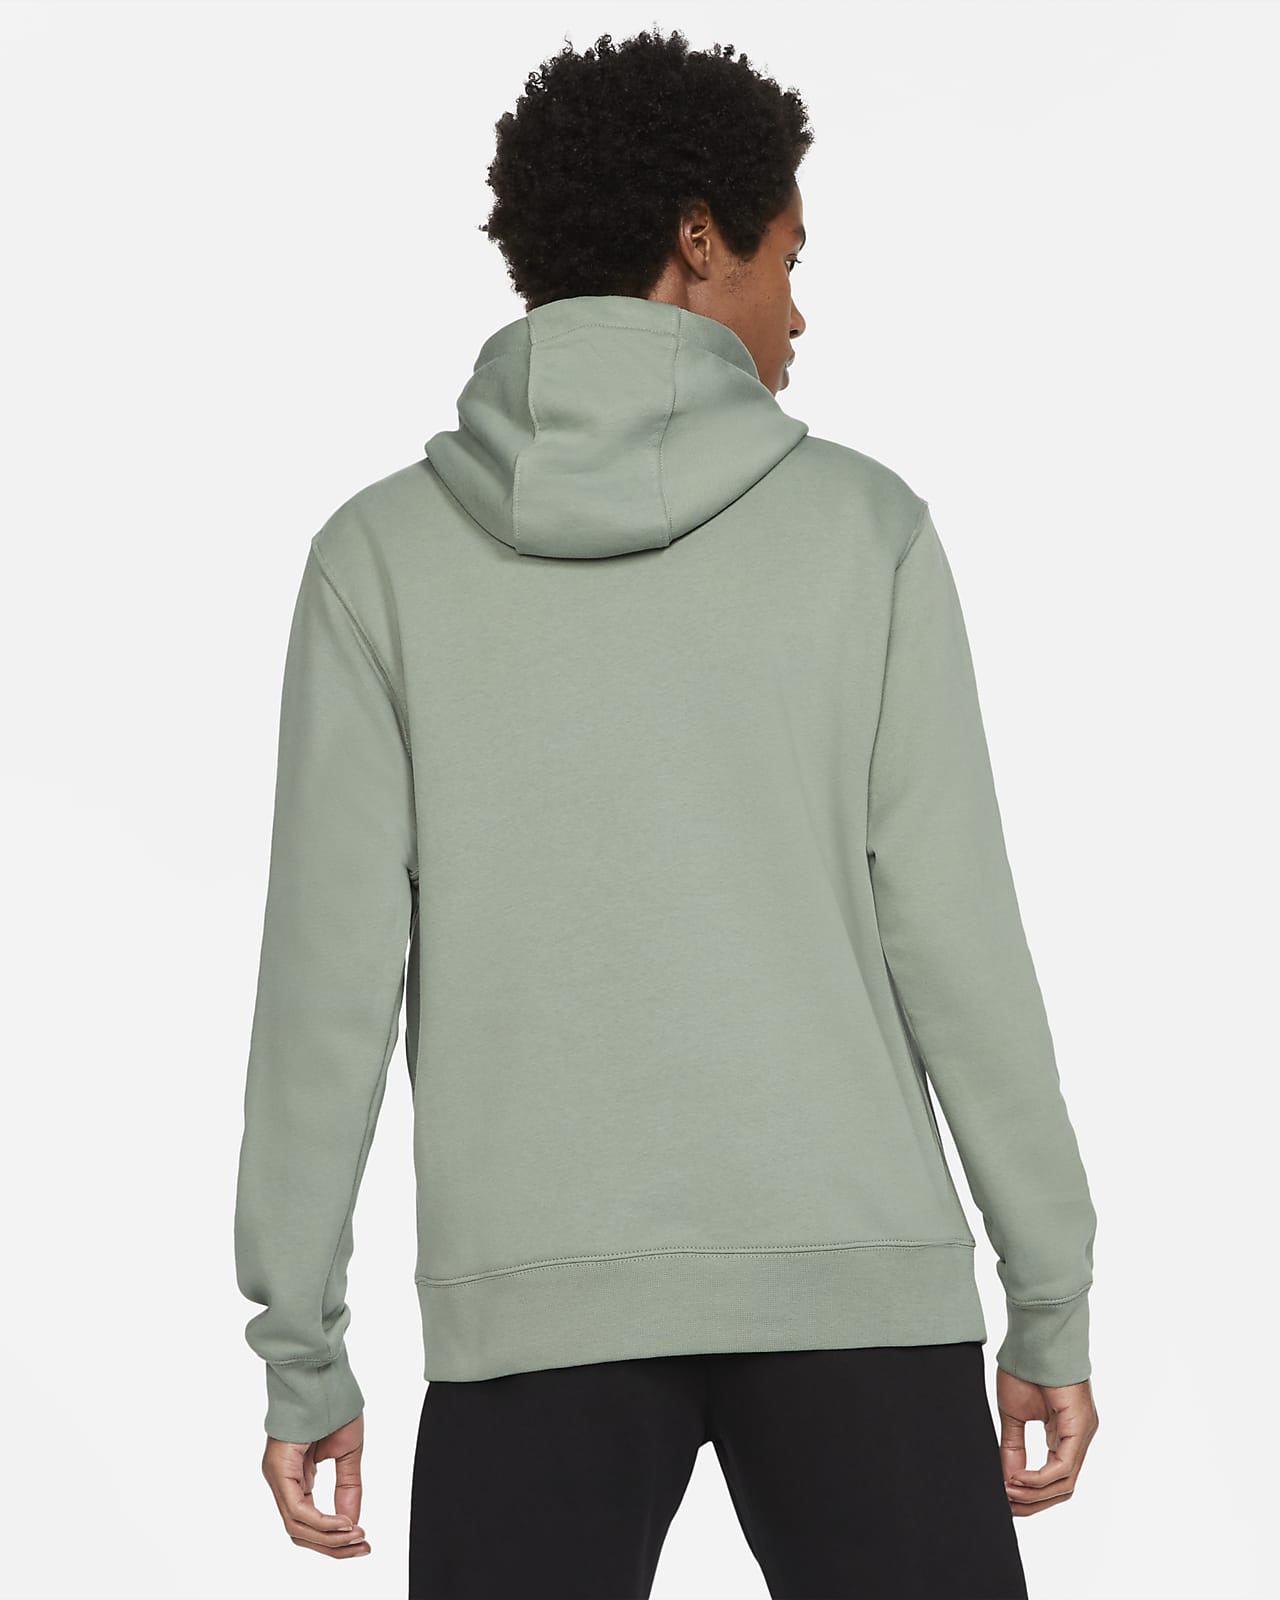 hoodie nike green